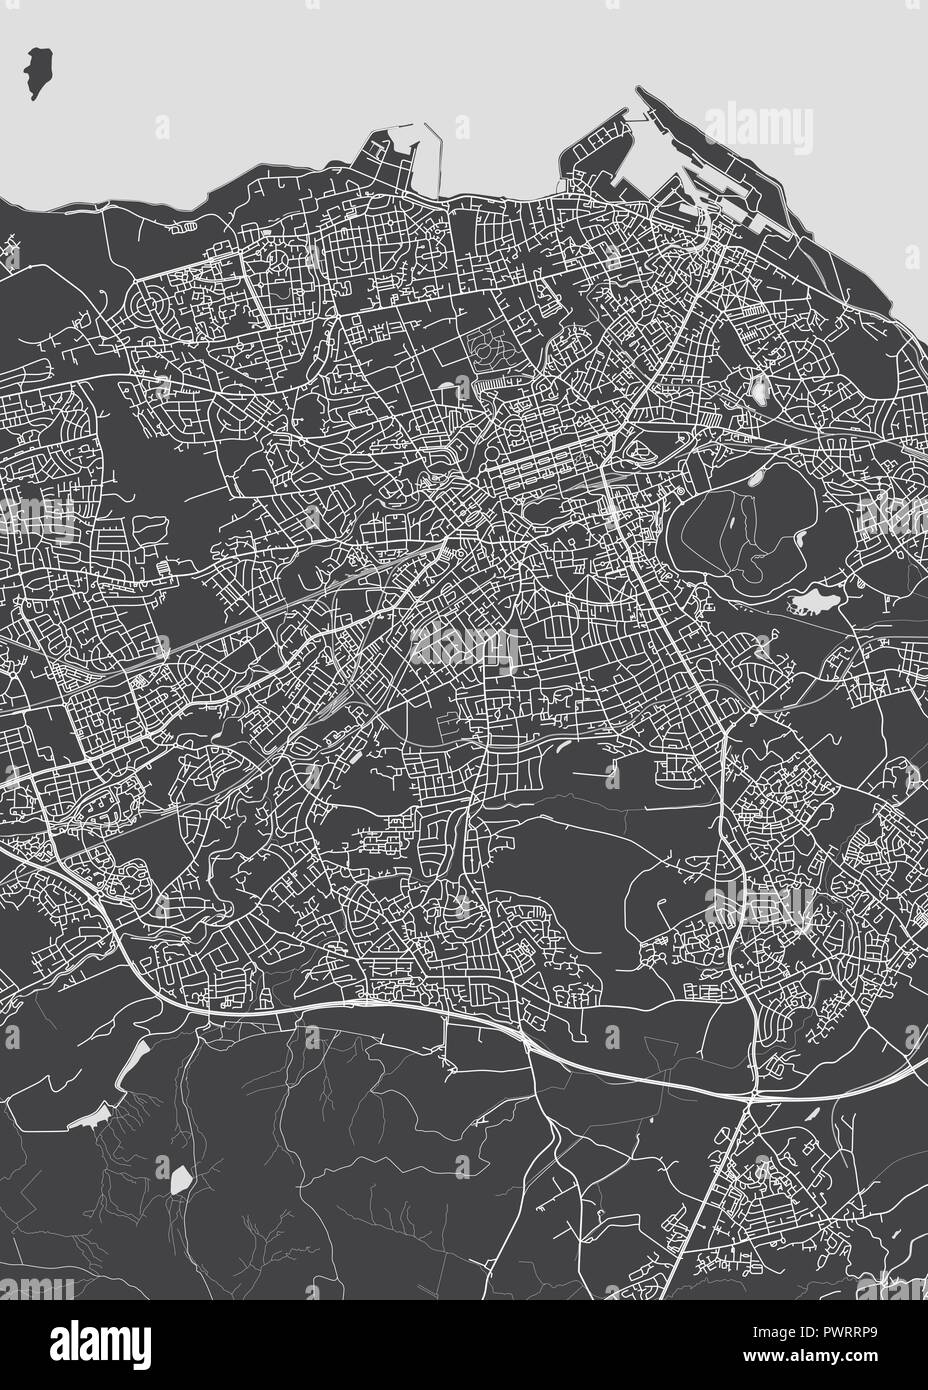 Plan détaillé monochrome ville d'Edimbourg plan détaillé de la ville, les rivières et les rues Illustration de Vecteur